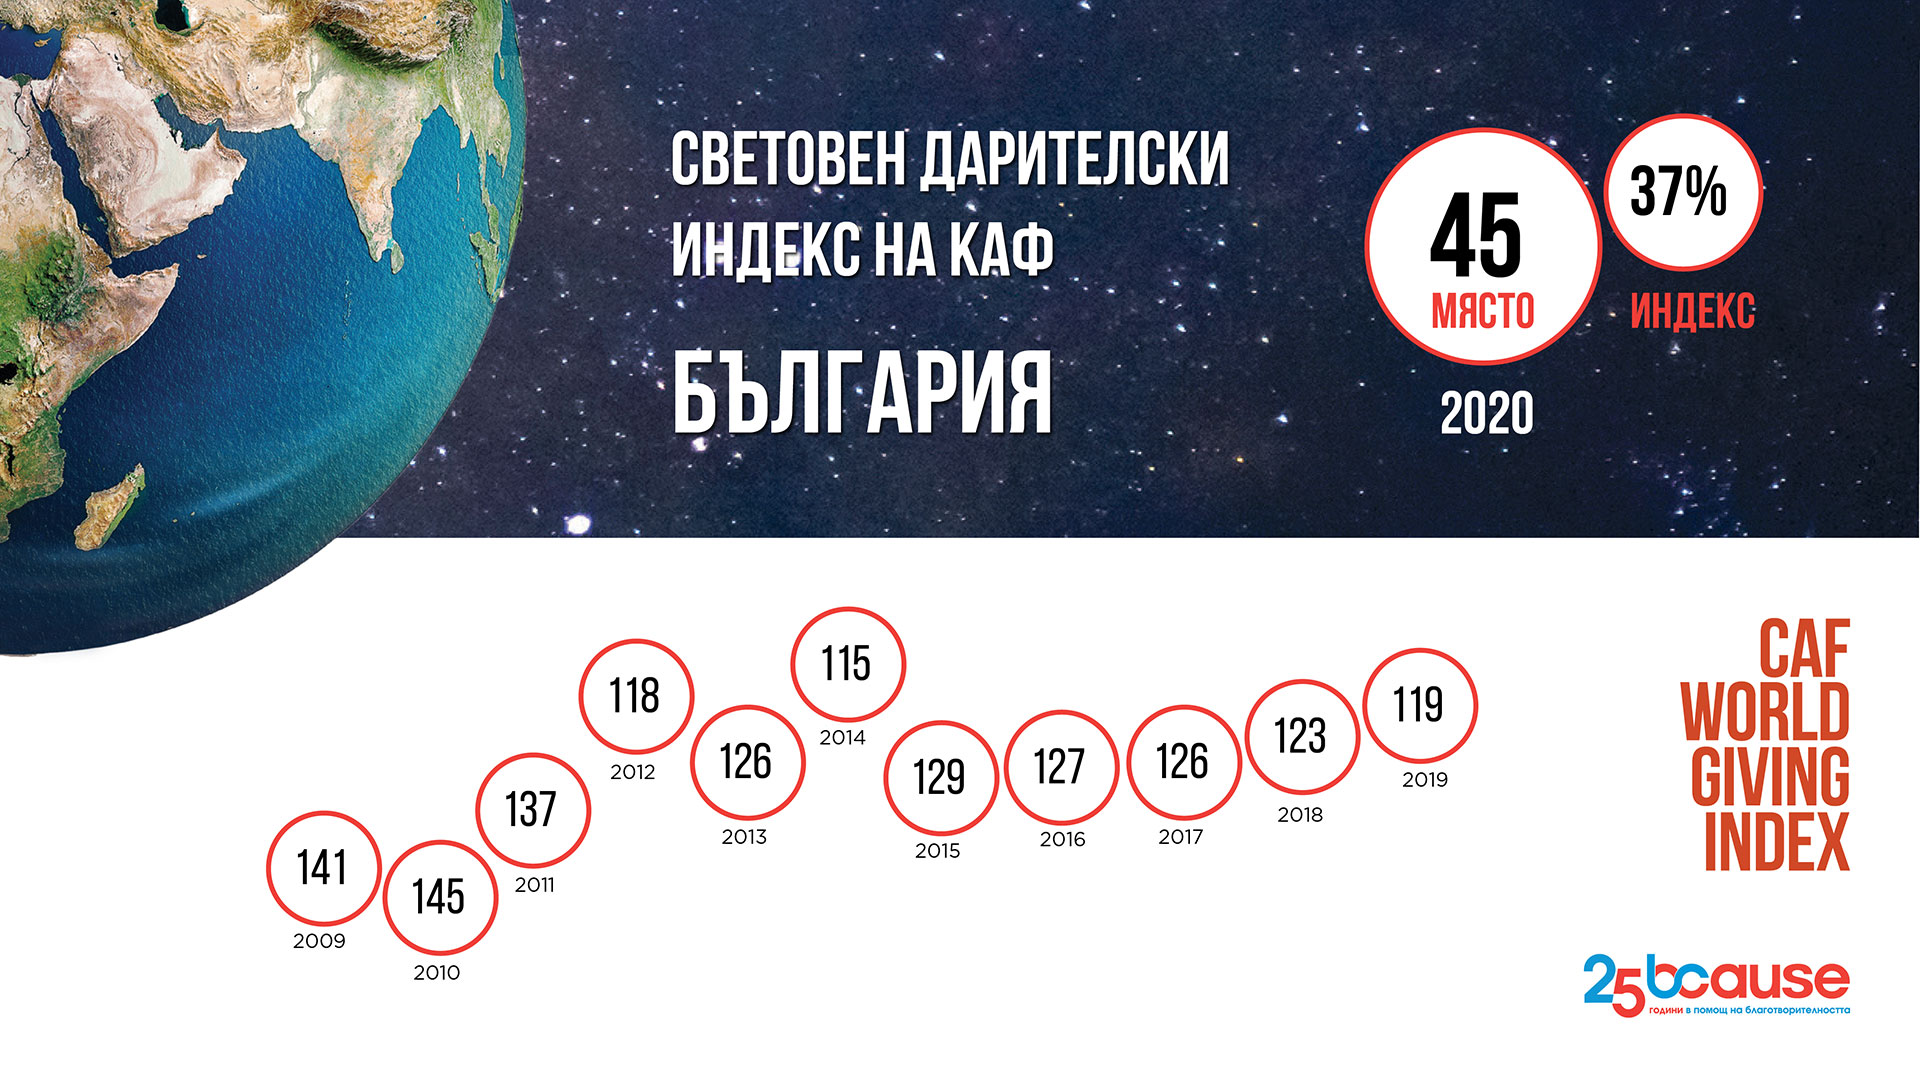 Скок нагоре: България е на 45 място по щедрост в света през 2020